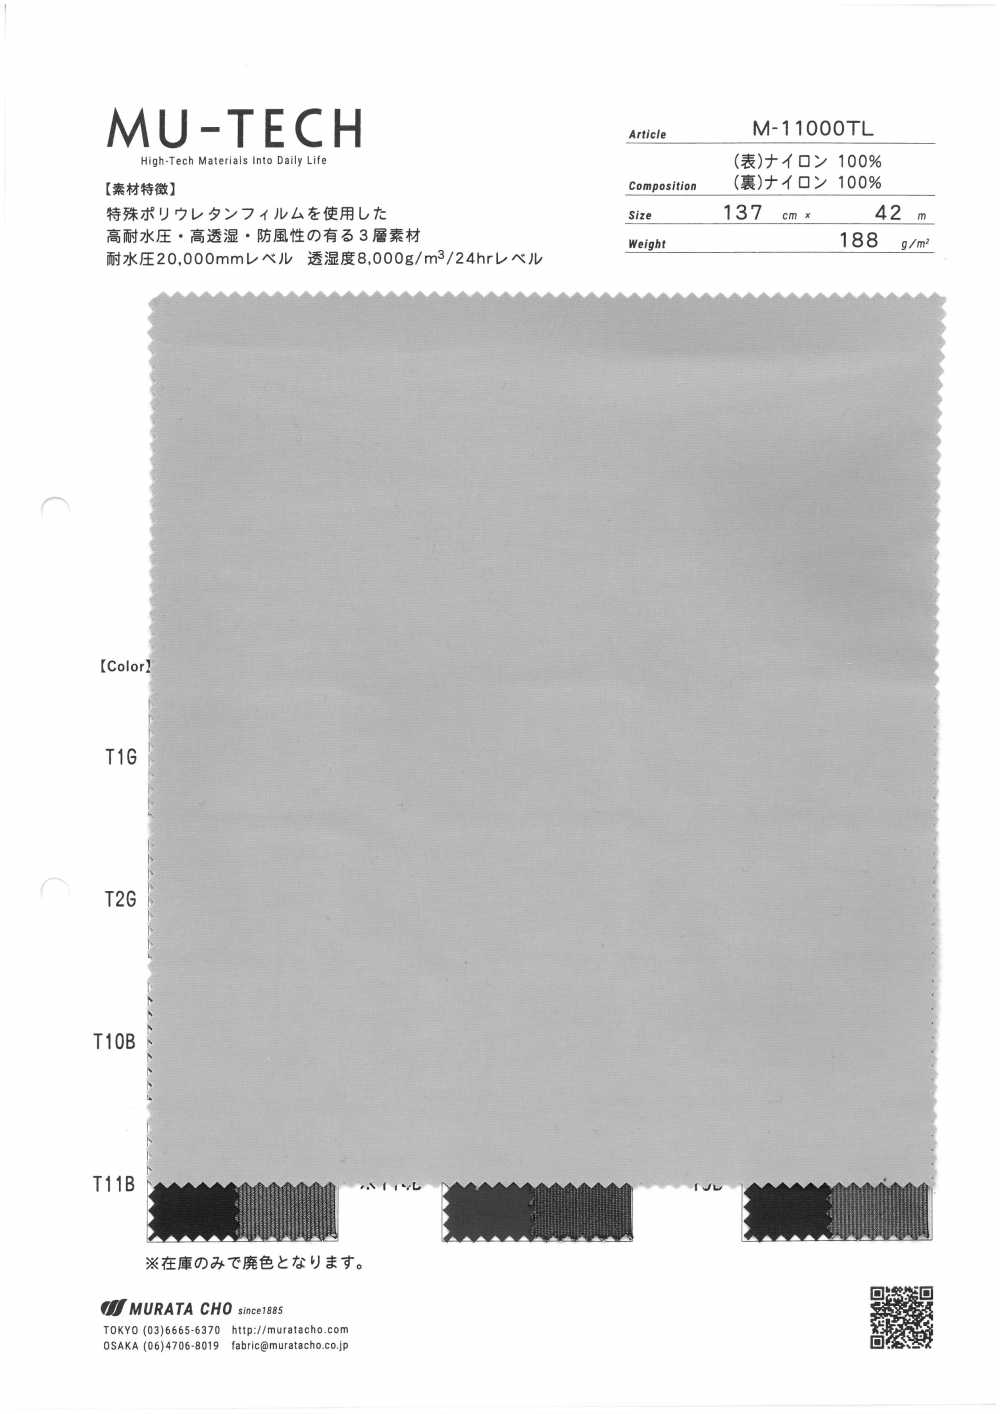 M-11000TL Nylon Fuzzy De 3 Camadas De Alto Desempenho[Têxtil / Tecido] Muratacho